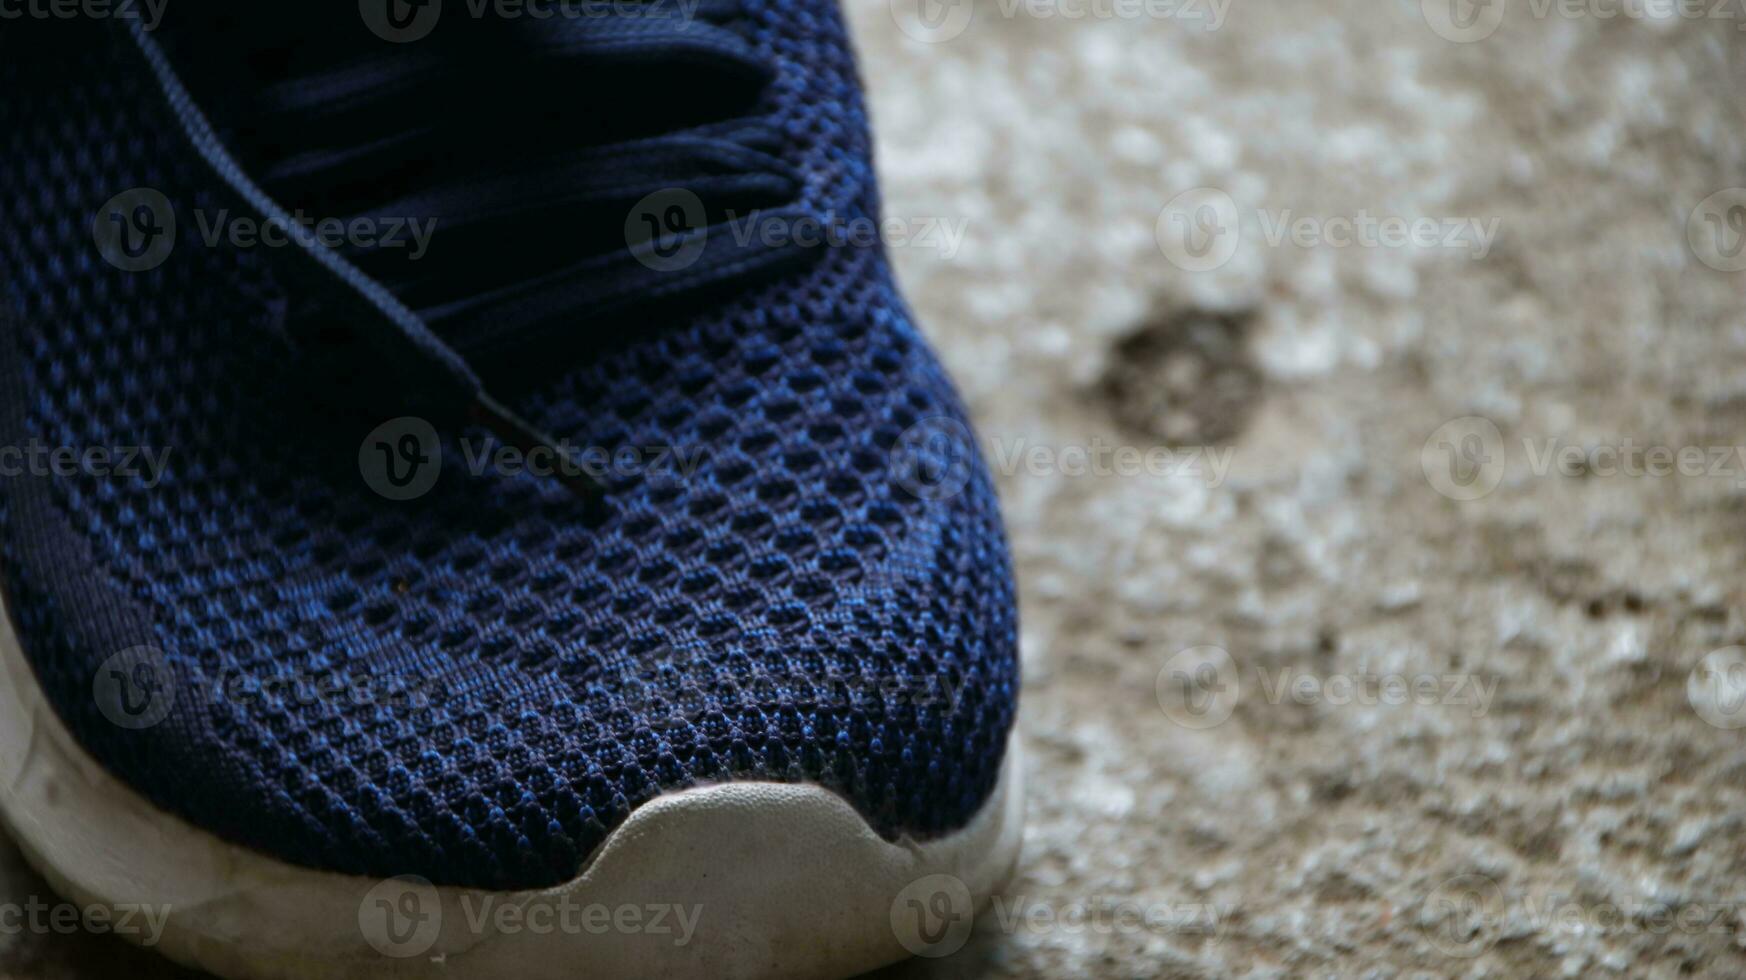 Blau Sport Schuhe, Blau Turnschuhe auf schmutzig Fußboden foto